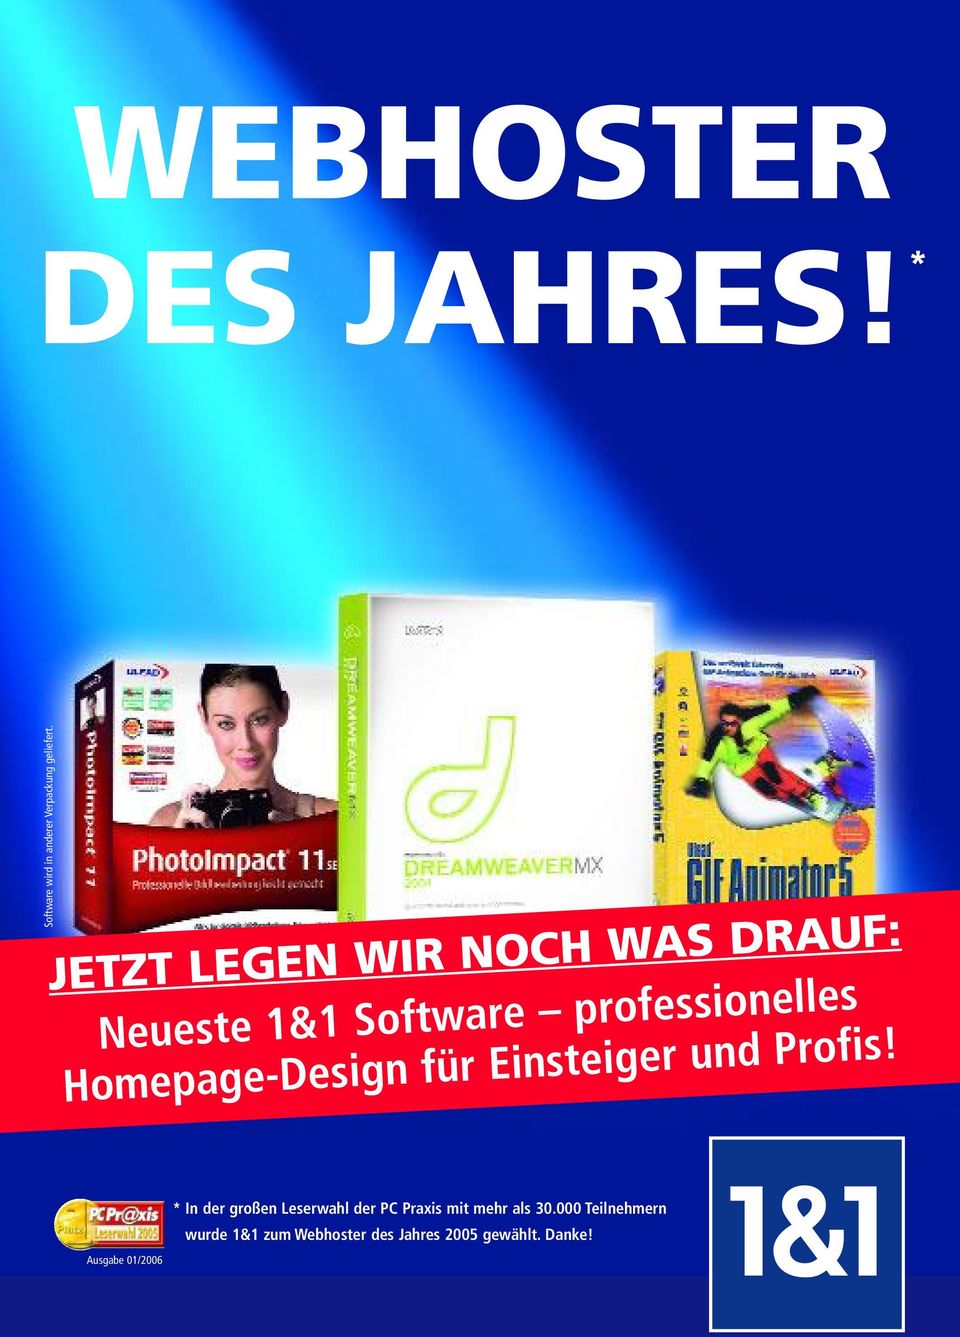 Homepage-Design für Einsteiger und Profis!